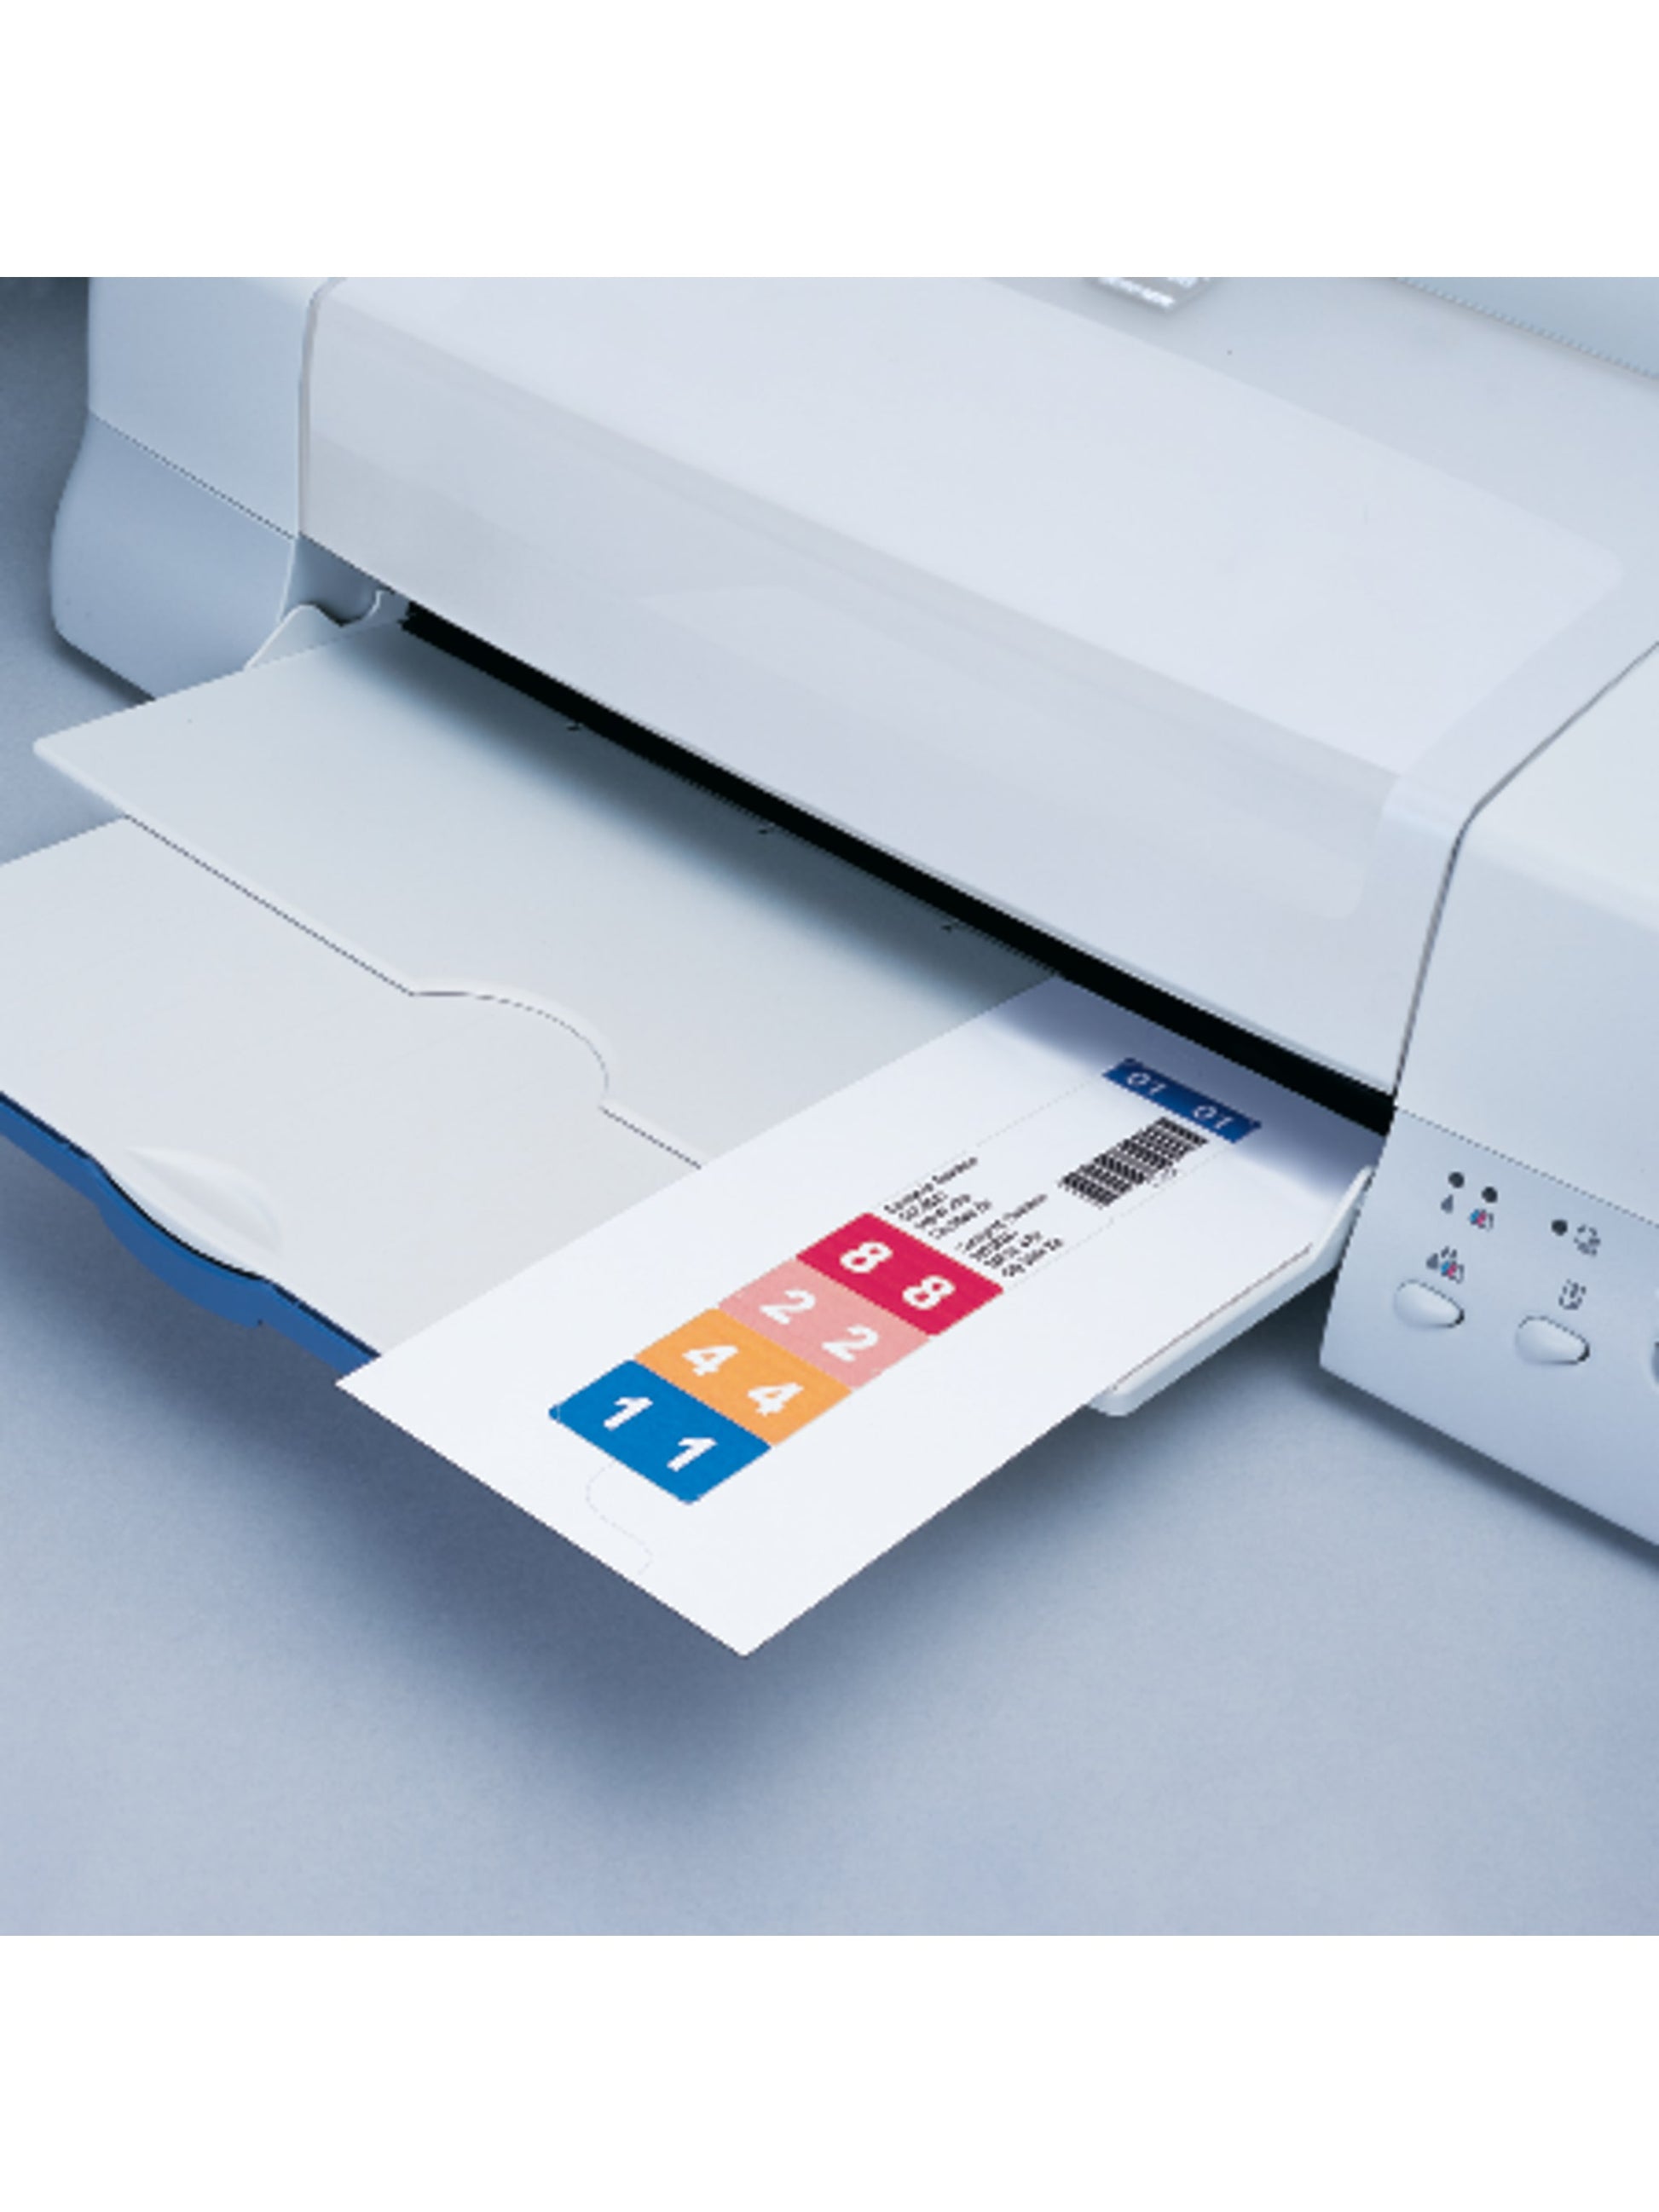 ColorBar®  Inkjet Labels, White Color, 1-1/2” X 8” Size, Set of 1, 086486027816